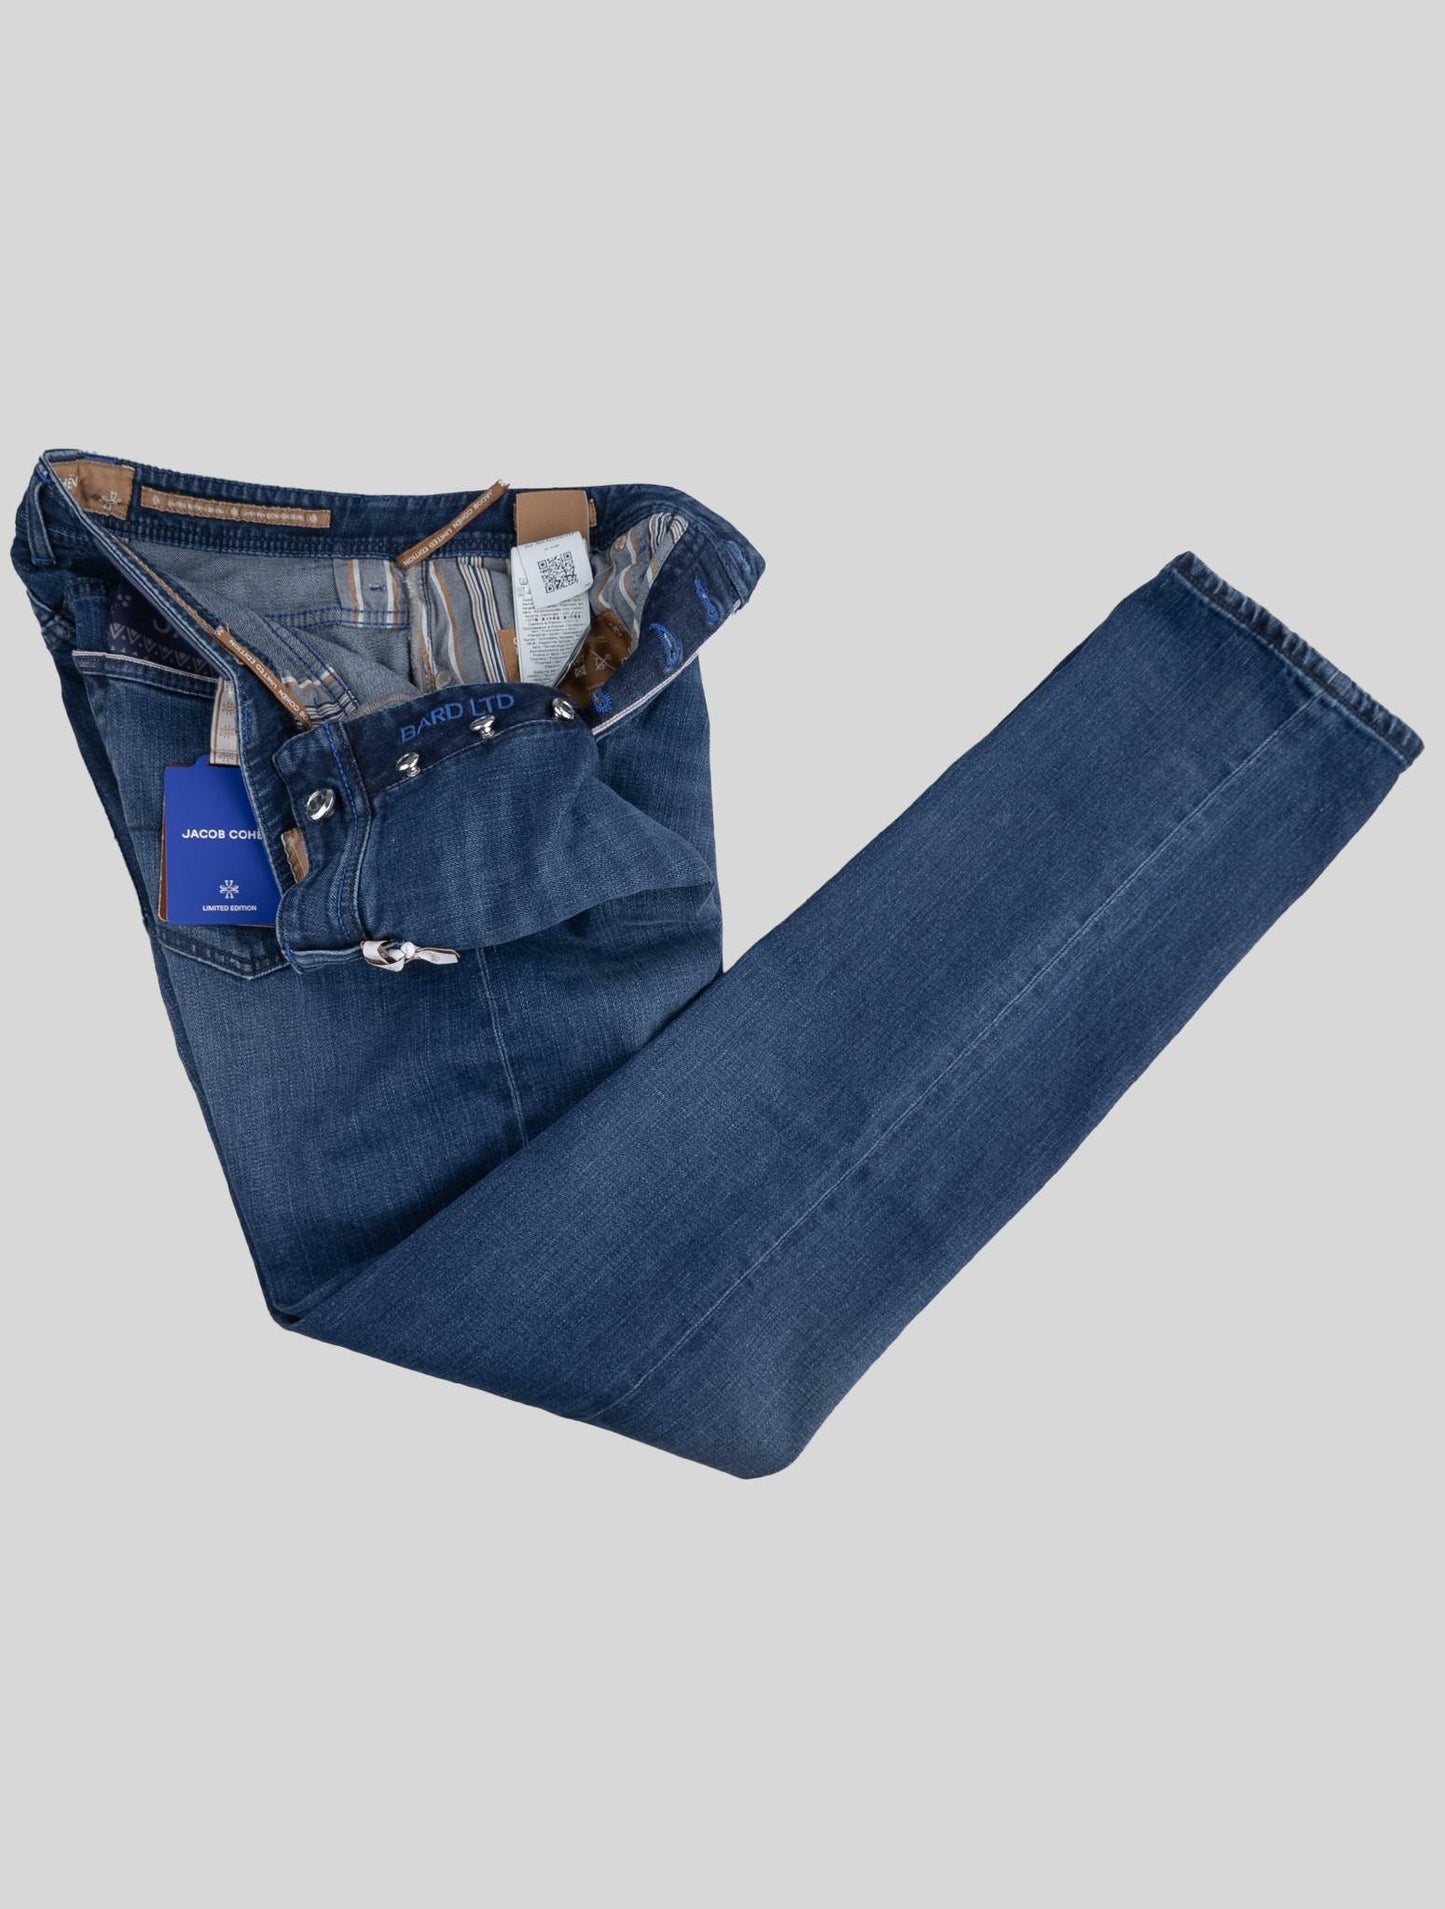 Jacob Cohen Blauw Katoen Pl Ea Jeans Limited Edition